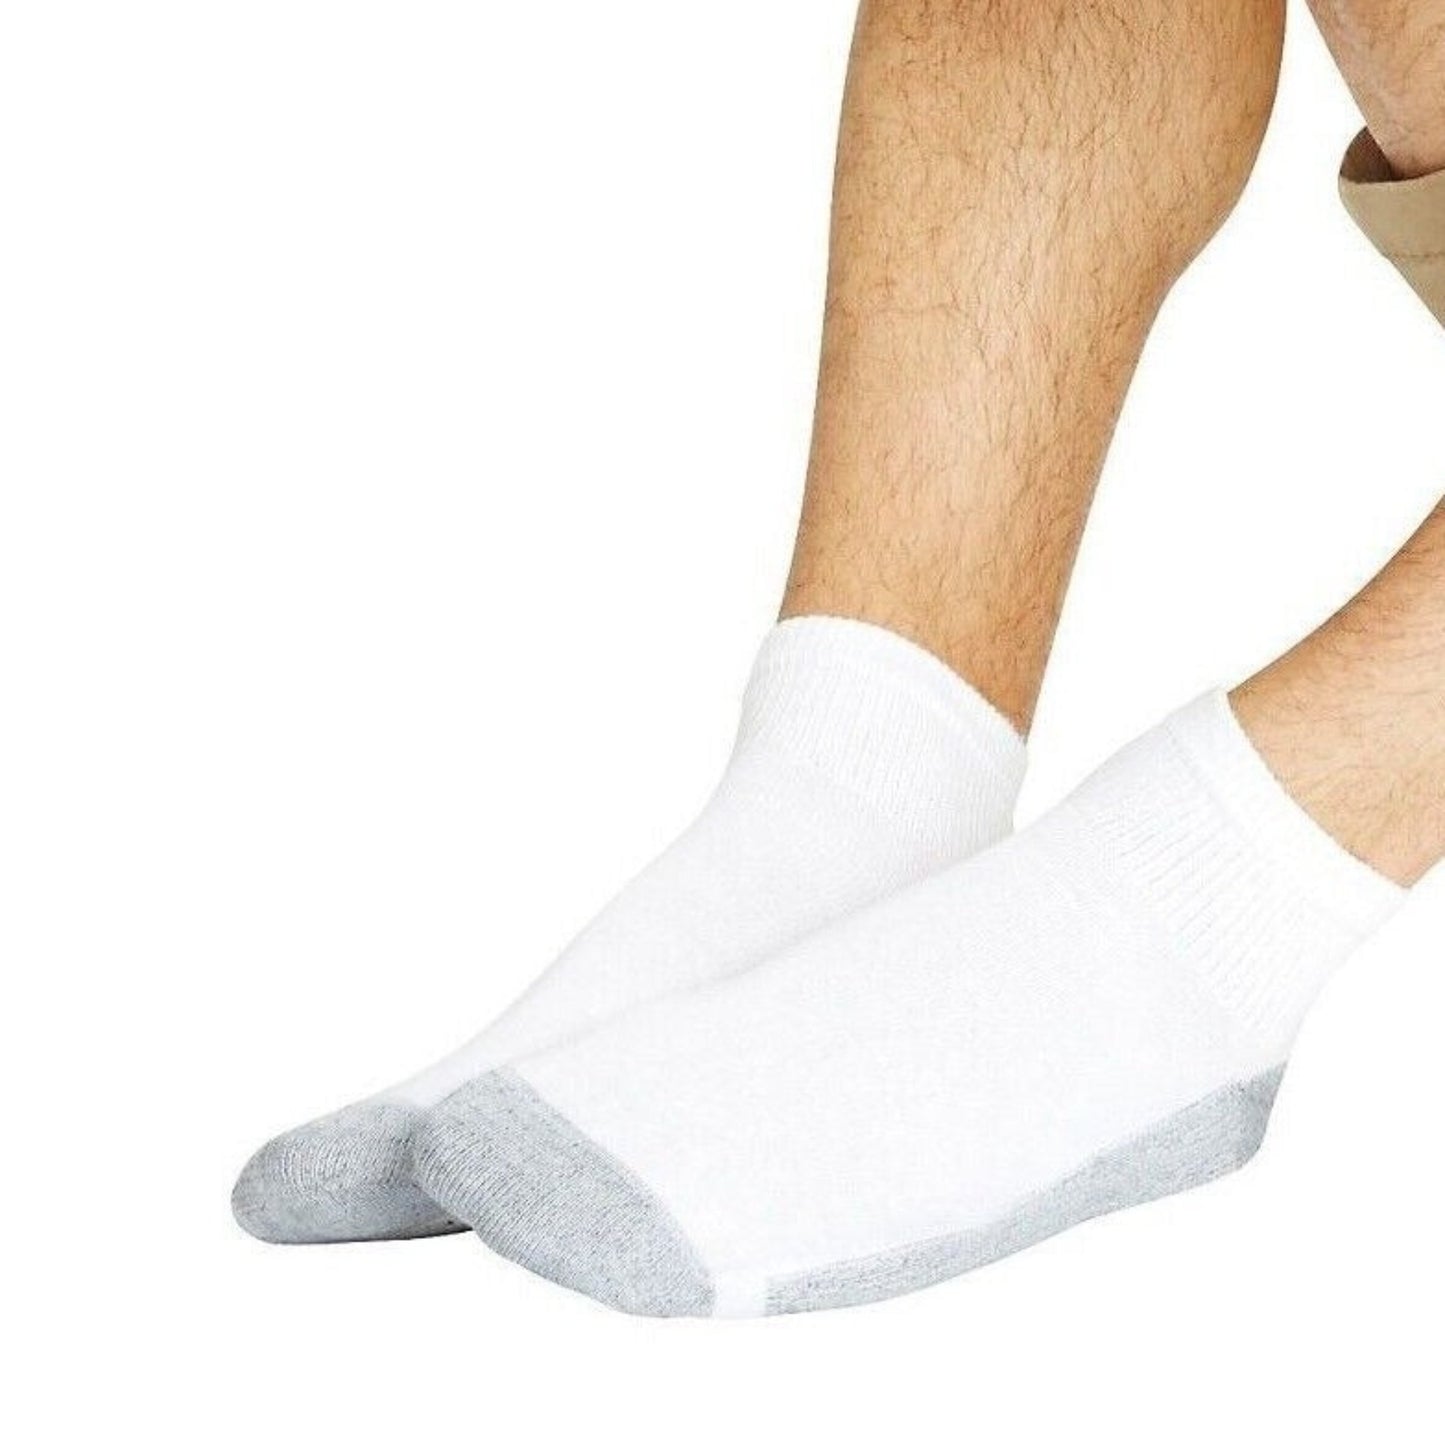 Hanes ankle socks